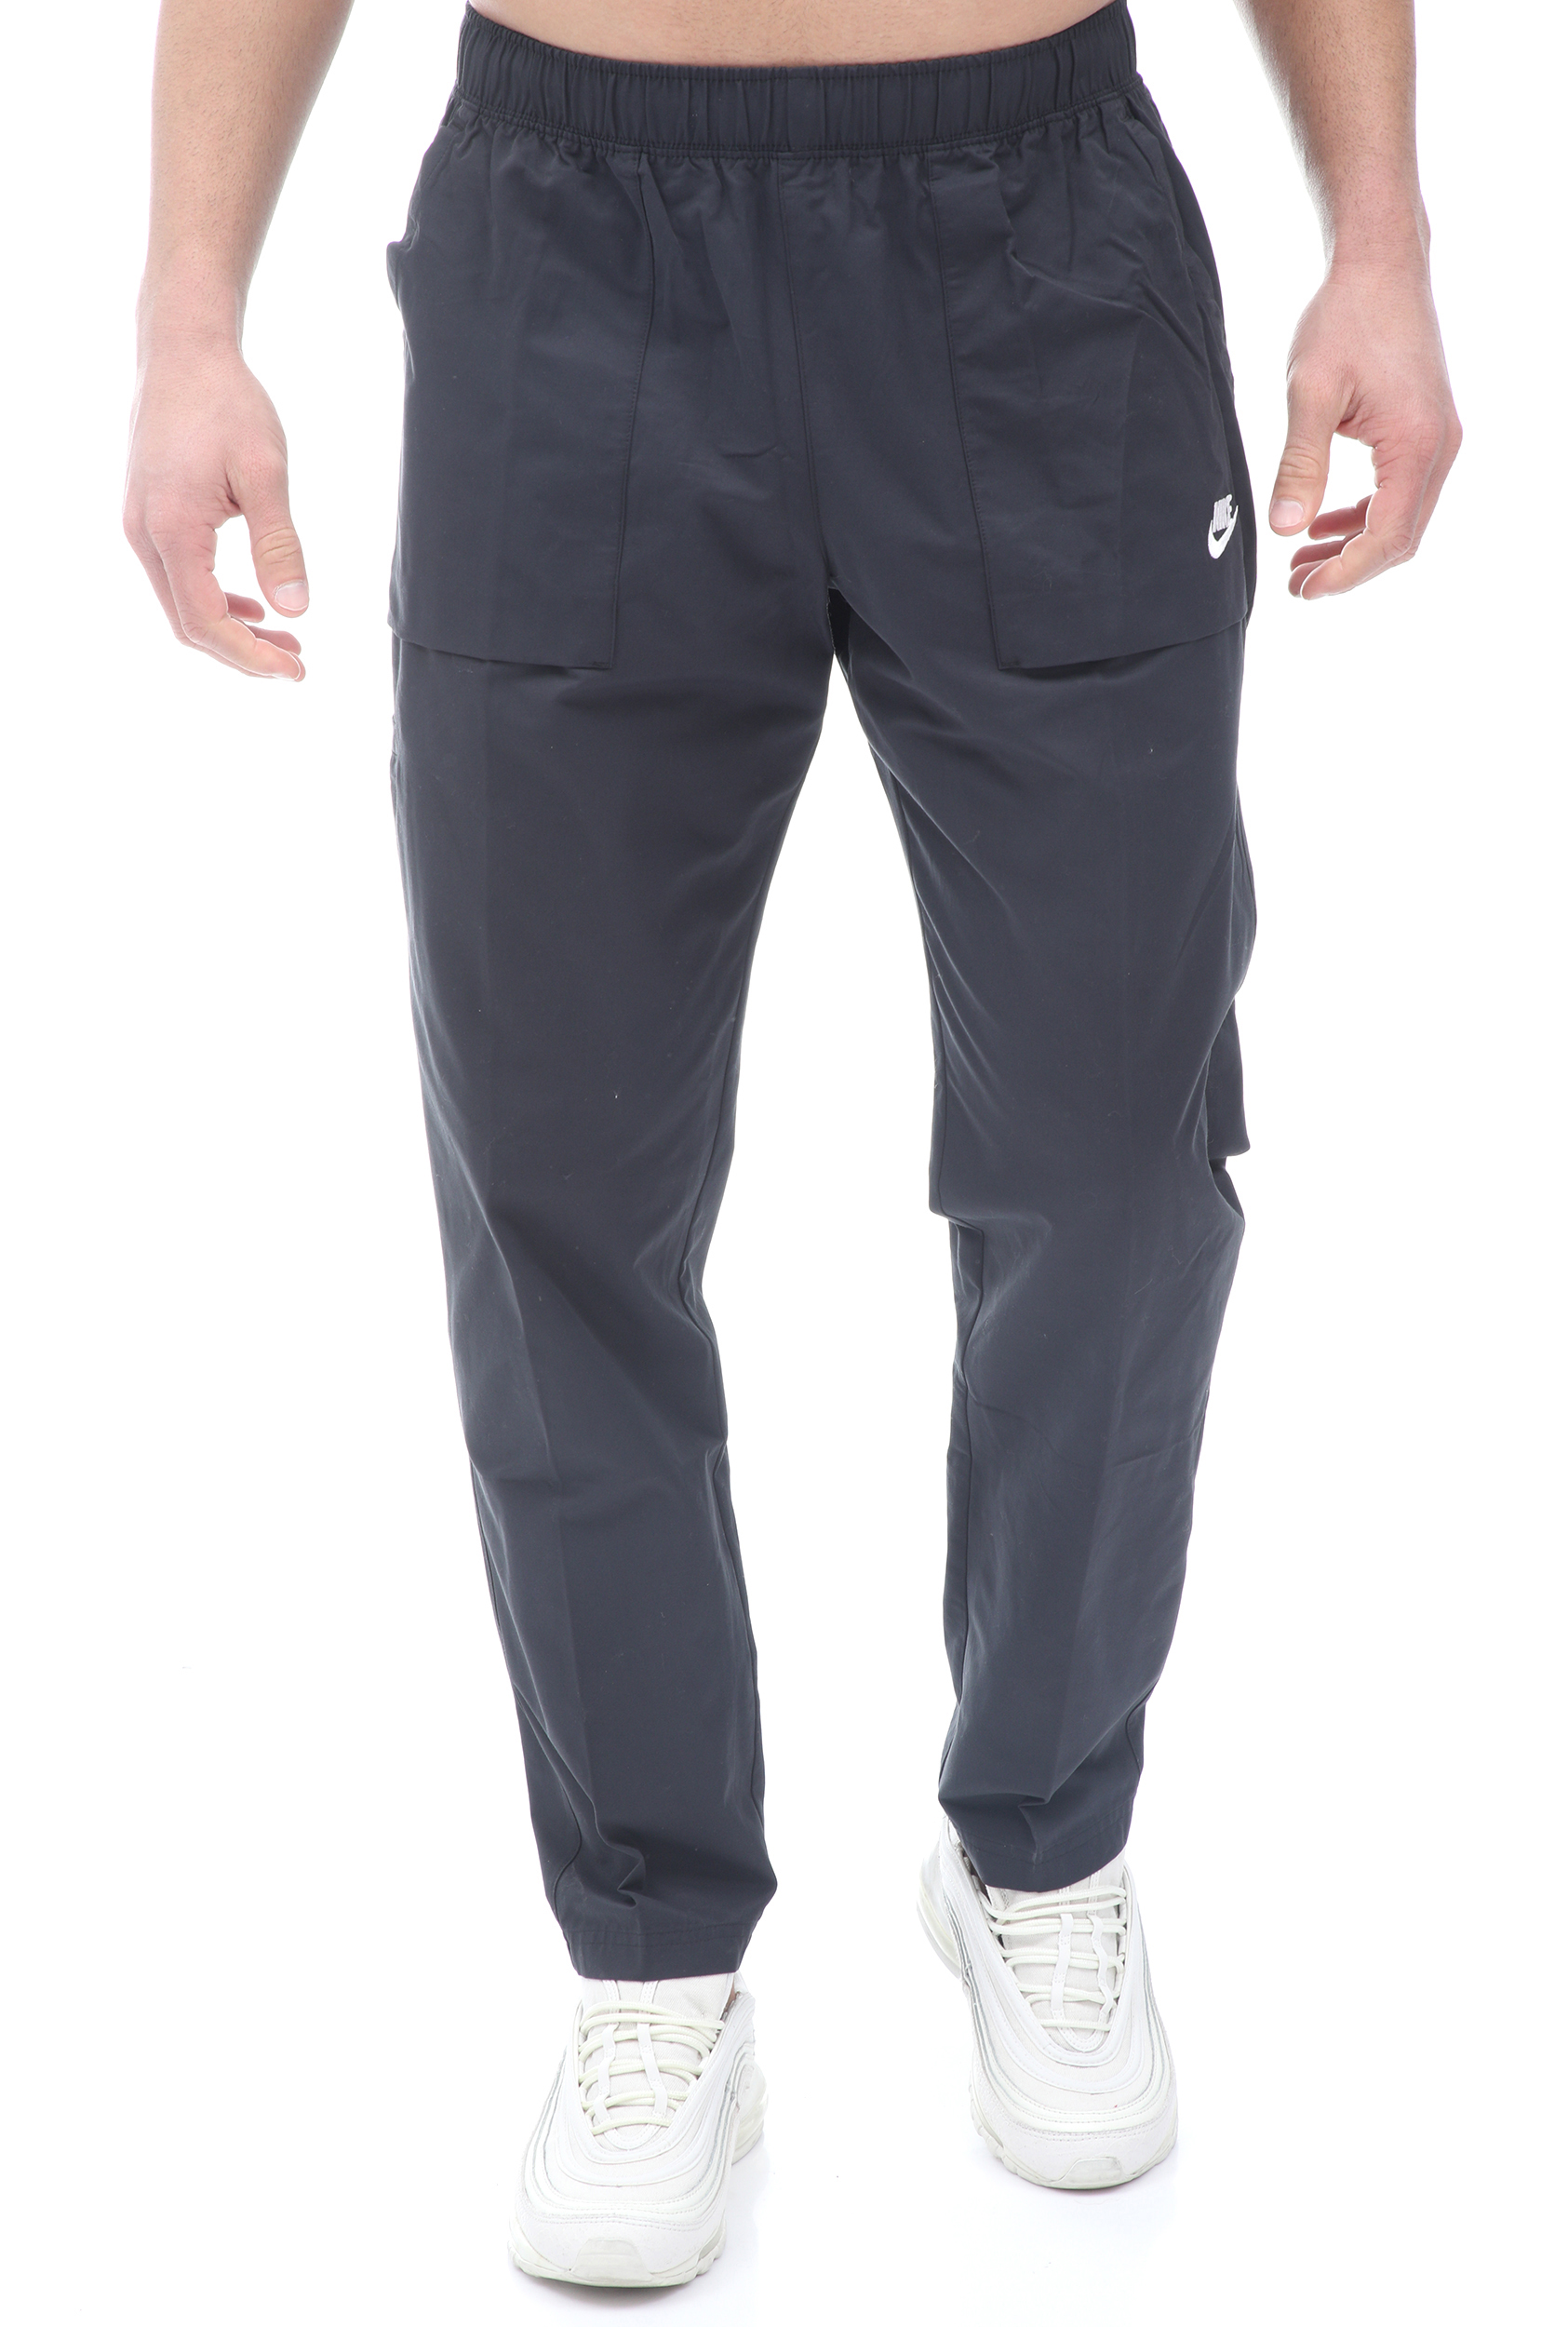 Ανδρικά/Ρούχα/Αθλητικά/Φόρμες NIKE - Ανδρικό παντελόνι φόρμας NIKE NSW CE WVN PANT PLAYERS μαύρο